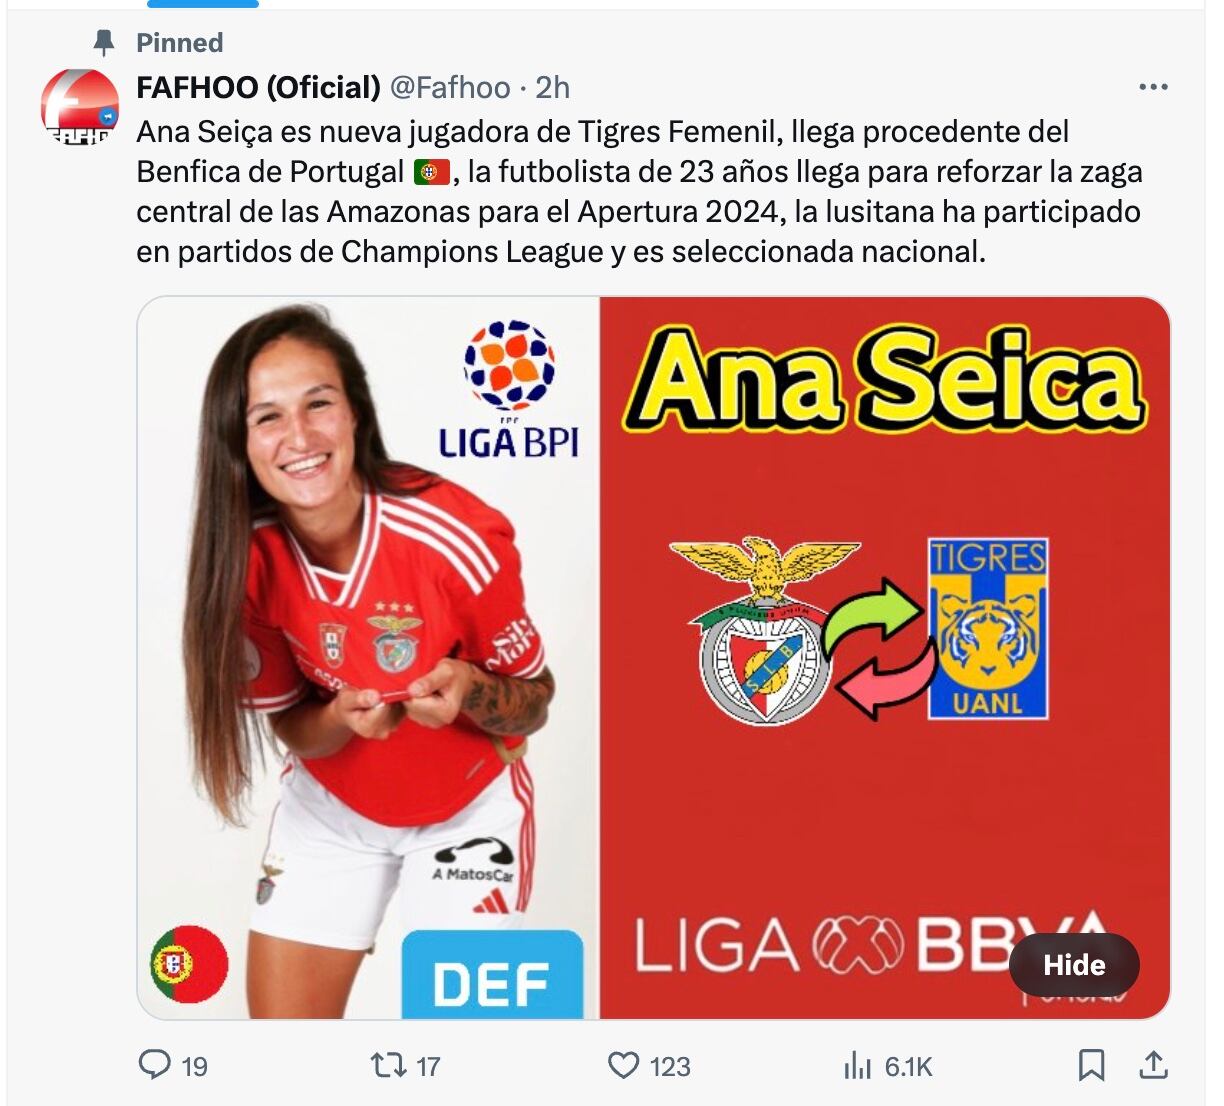 Ana Seiça, posible refuerzo de Tigres Femenil.